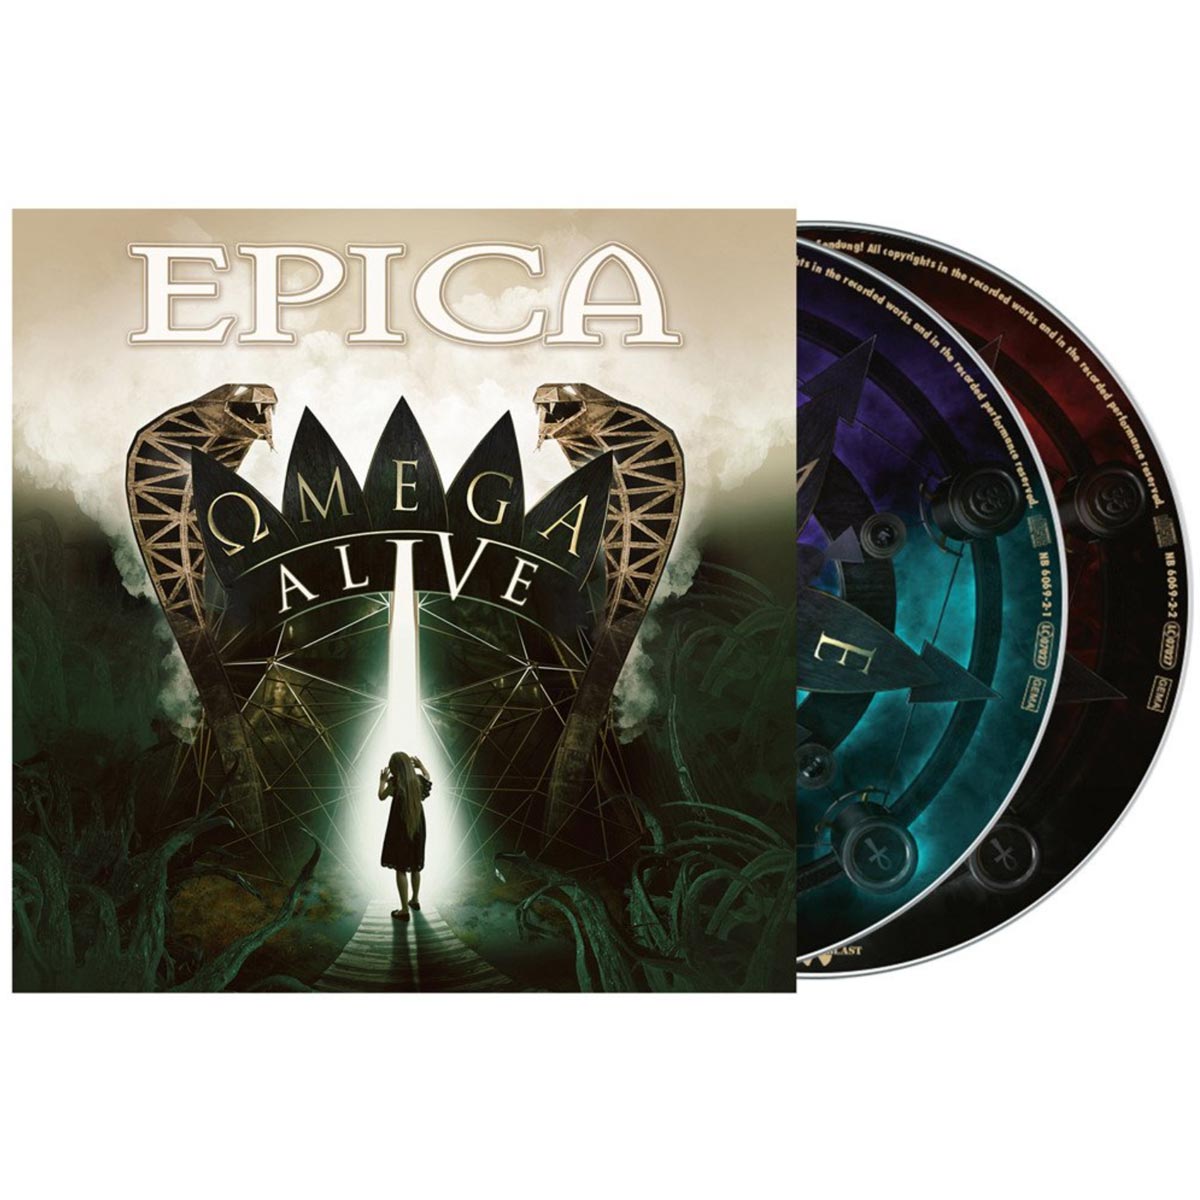 Epica: Omega alive 2021